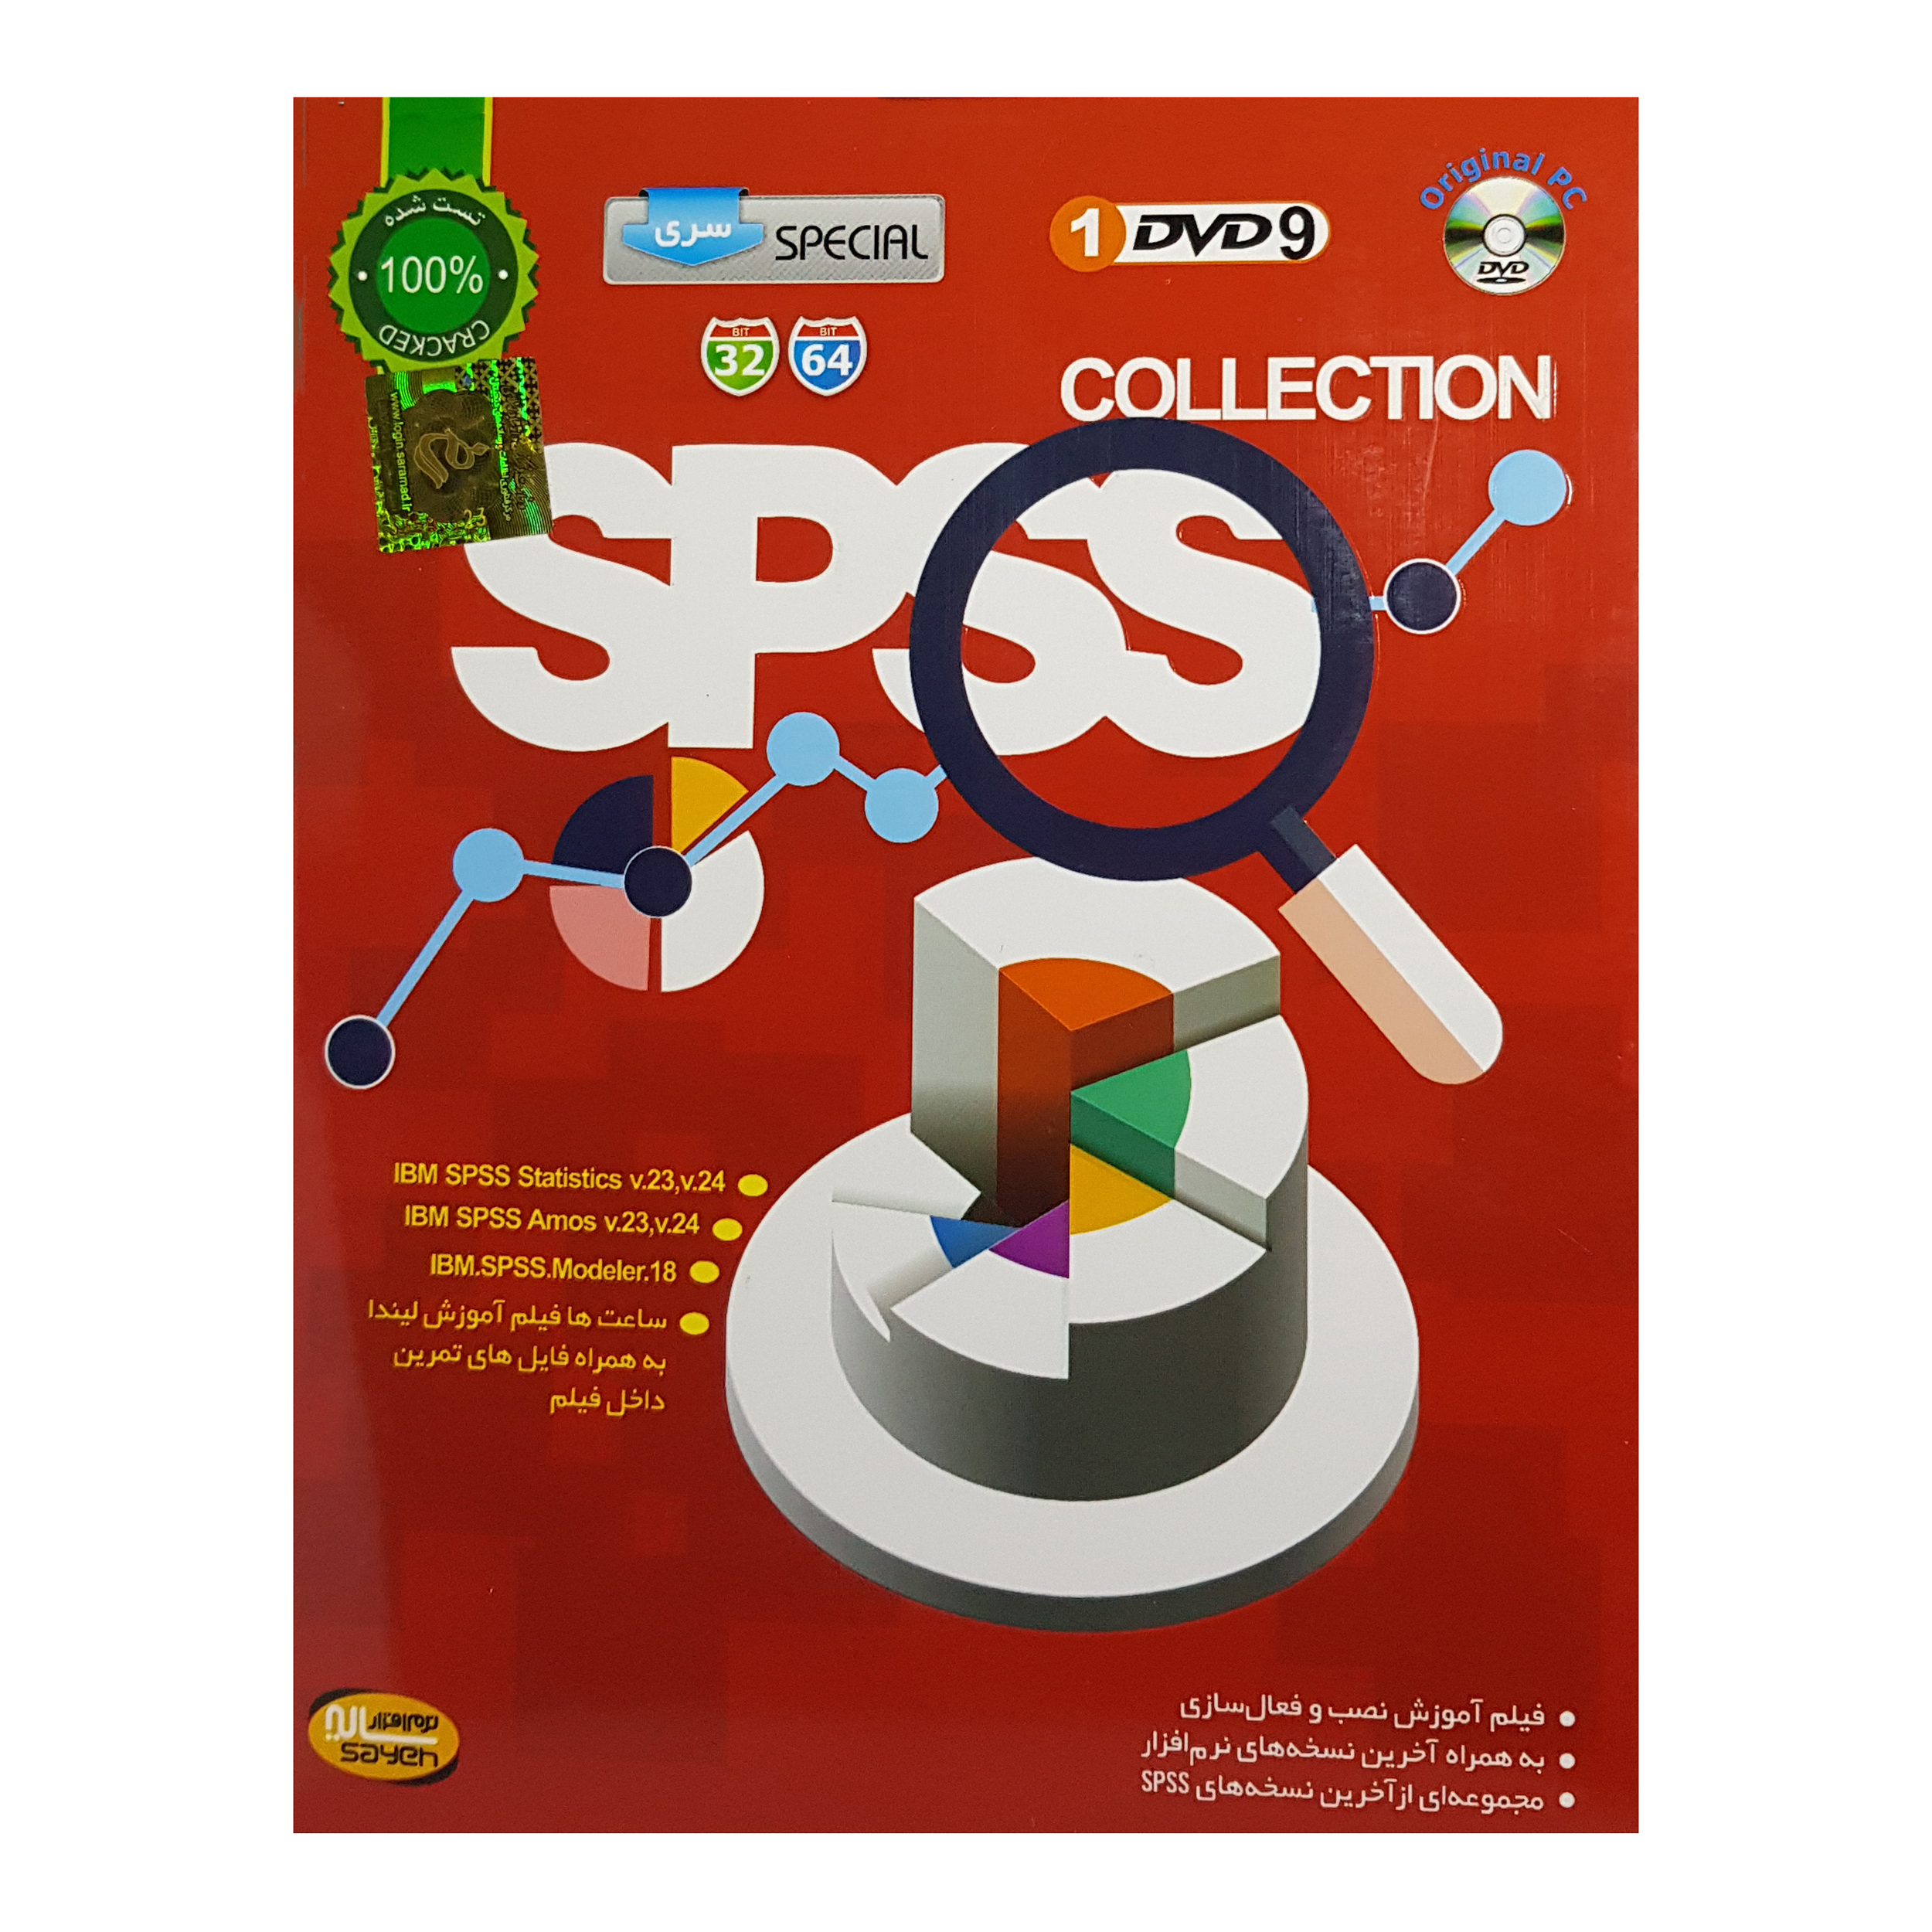 مجموعه نرم افزار SPSS Collection نشر سایه